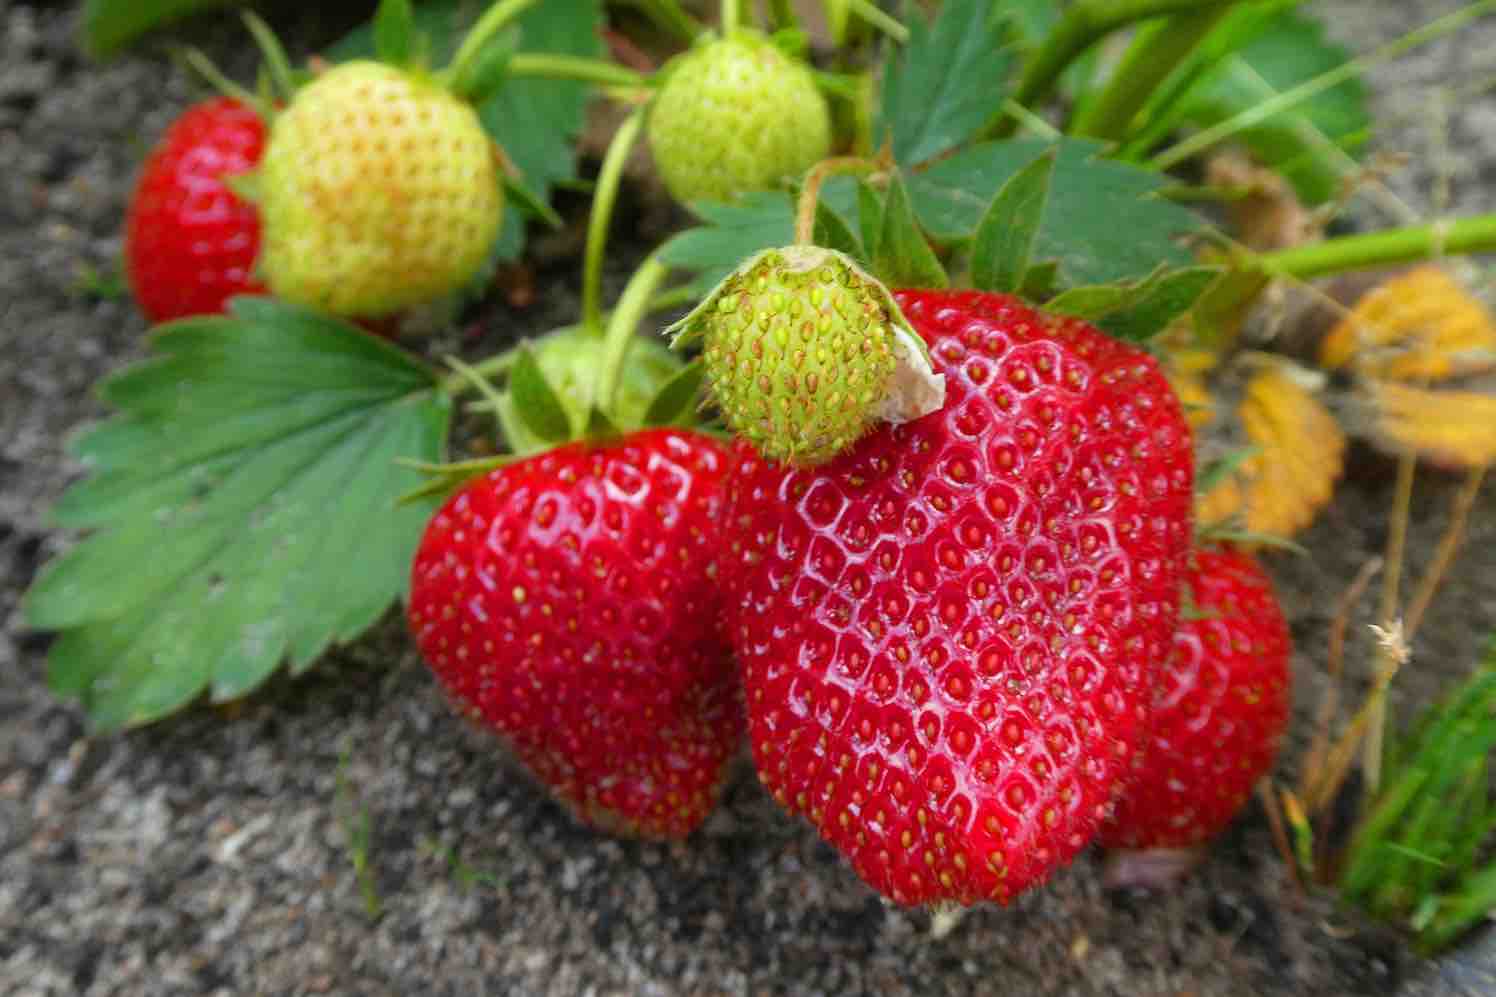 aardbeien uit eigen tuin